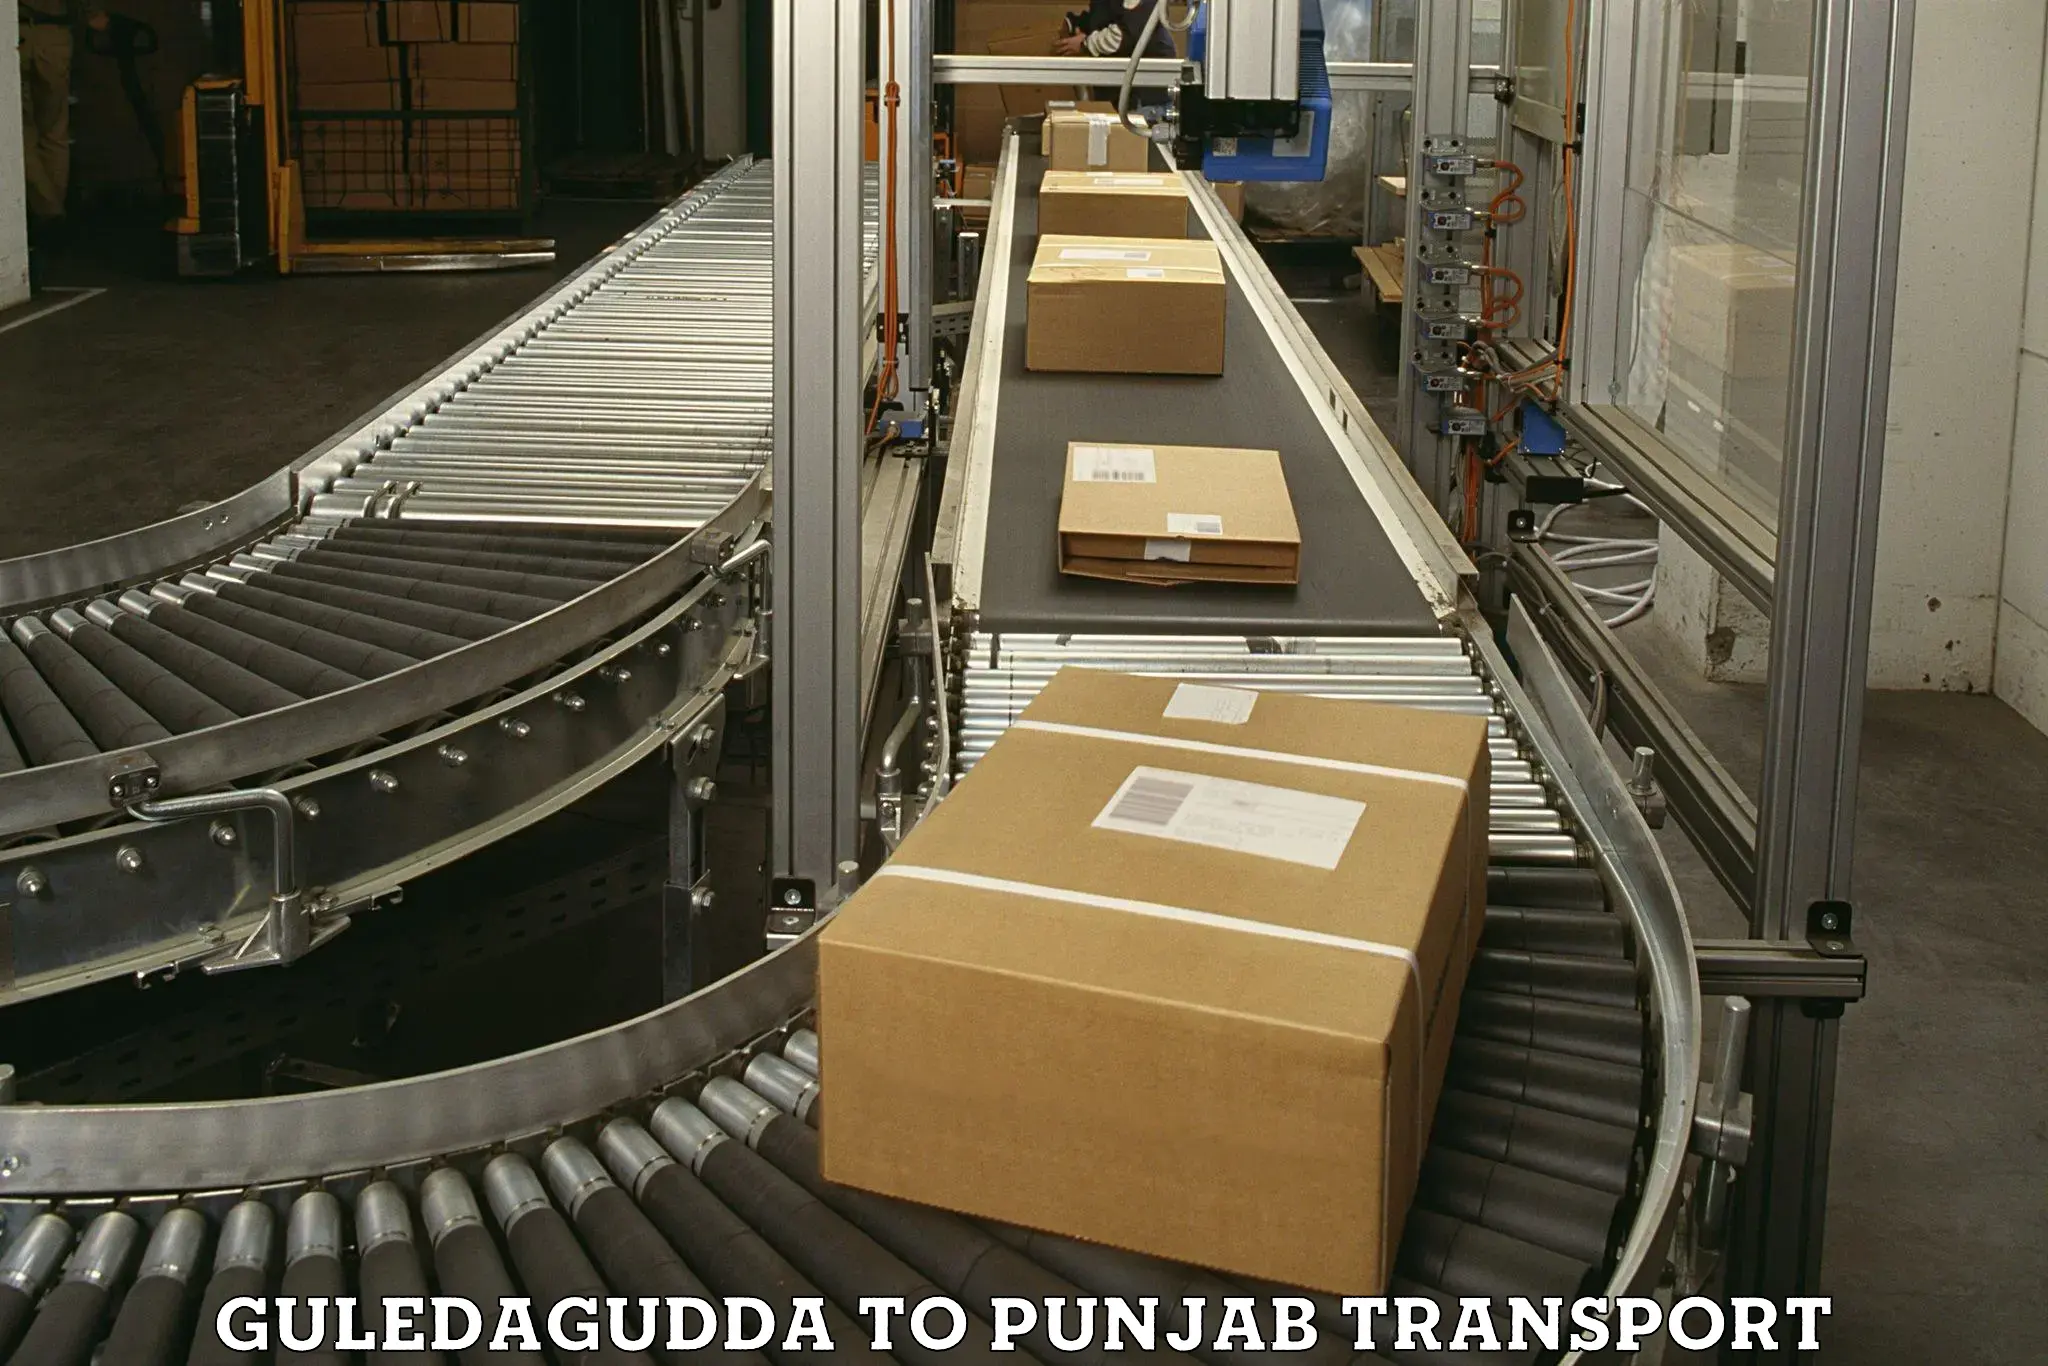 Road transport online services Guledagudda to Sirhind Fatehgarh